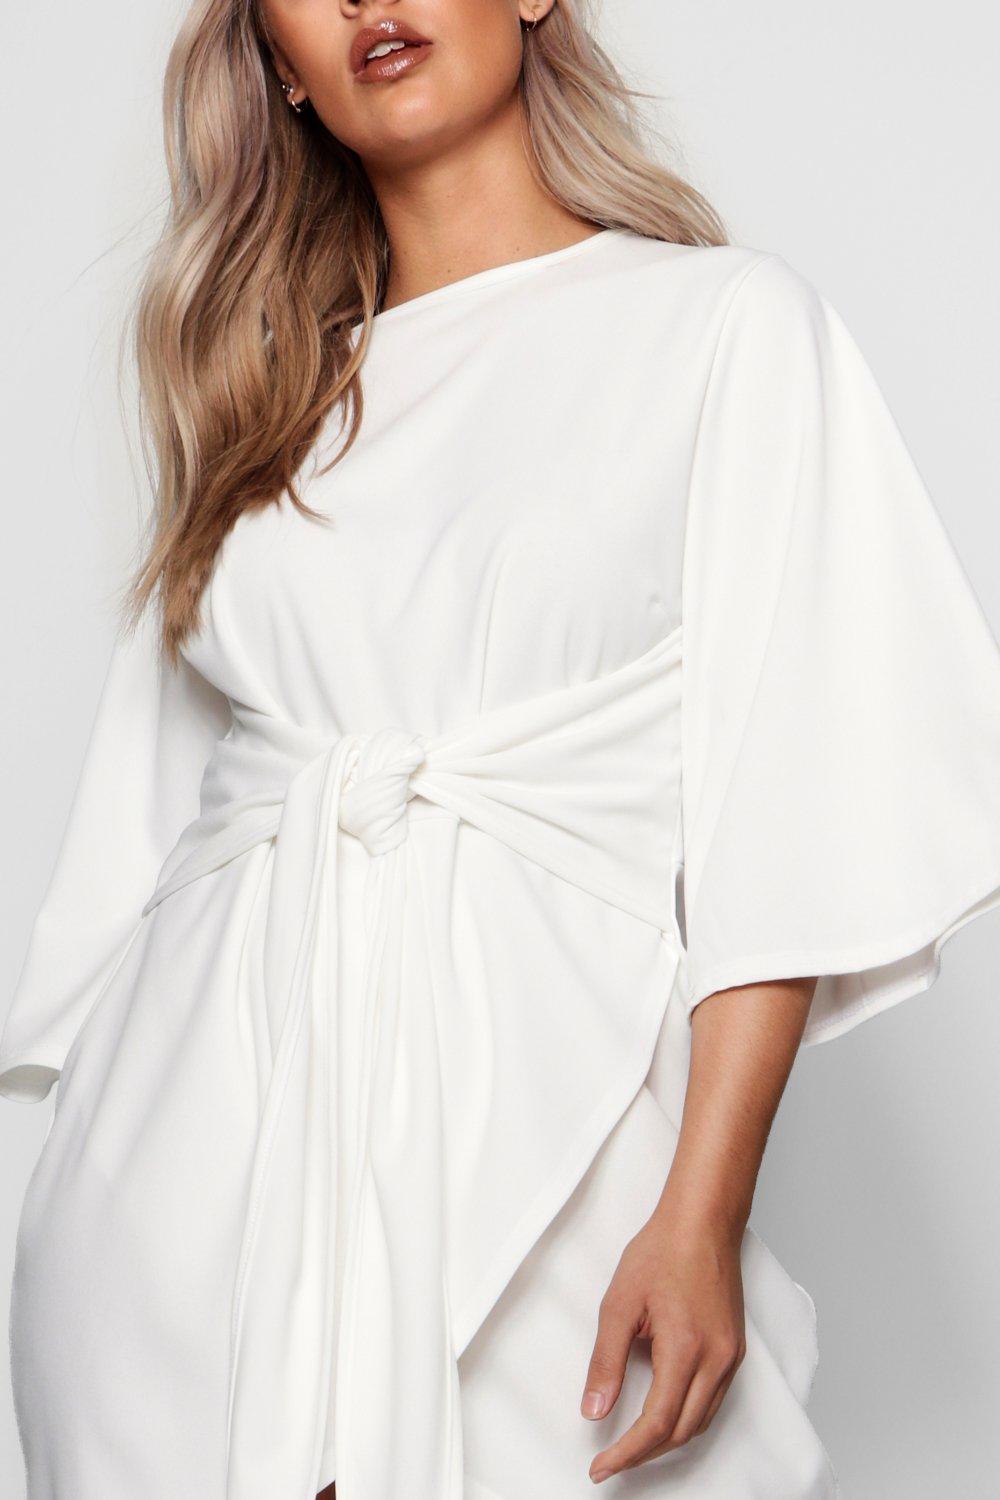 white kimono sleeve dress